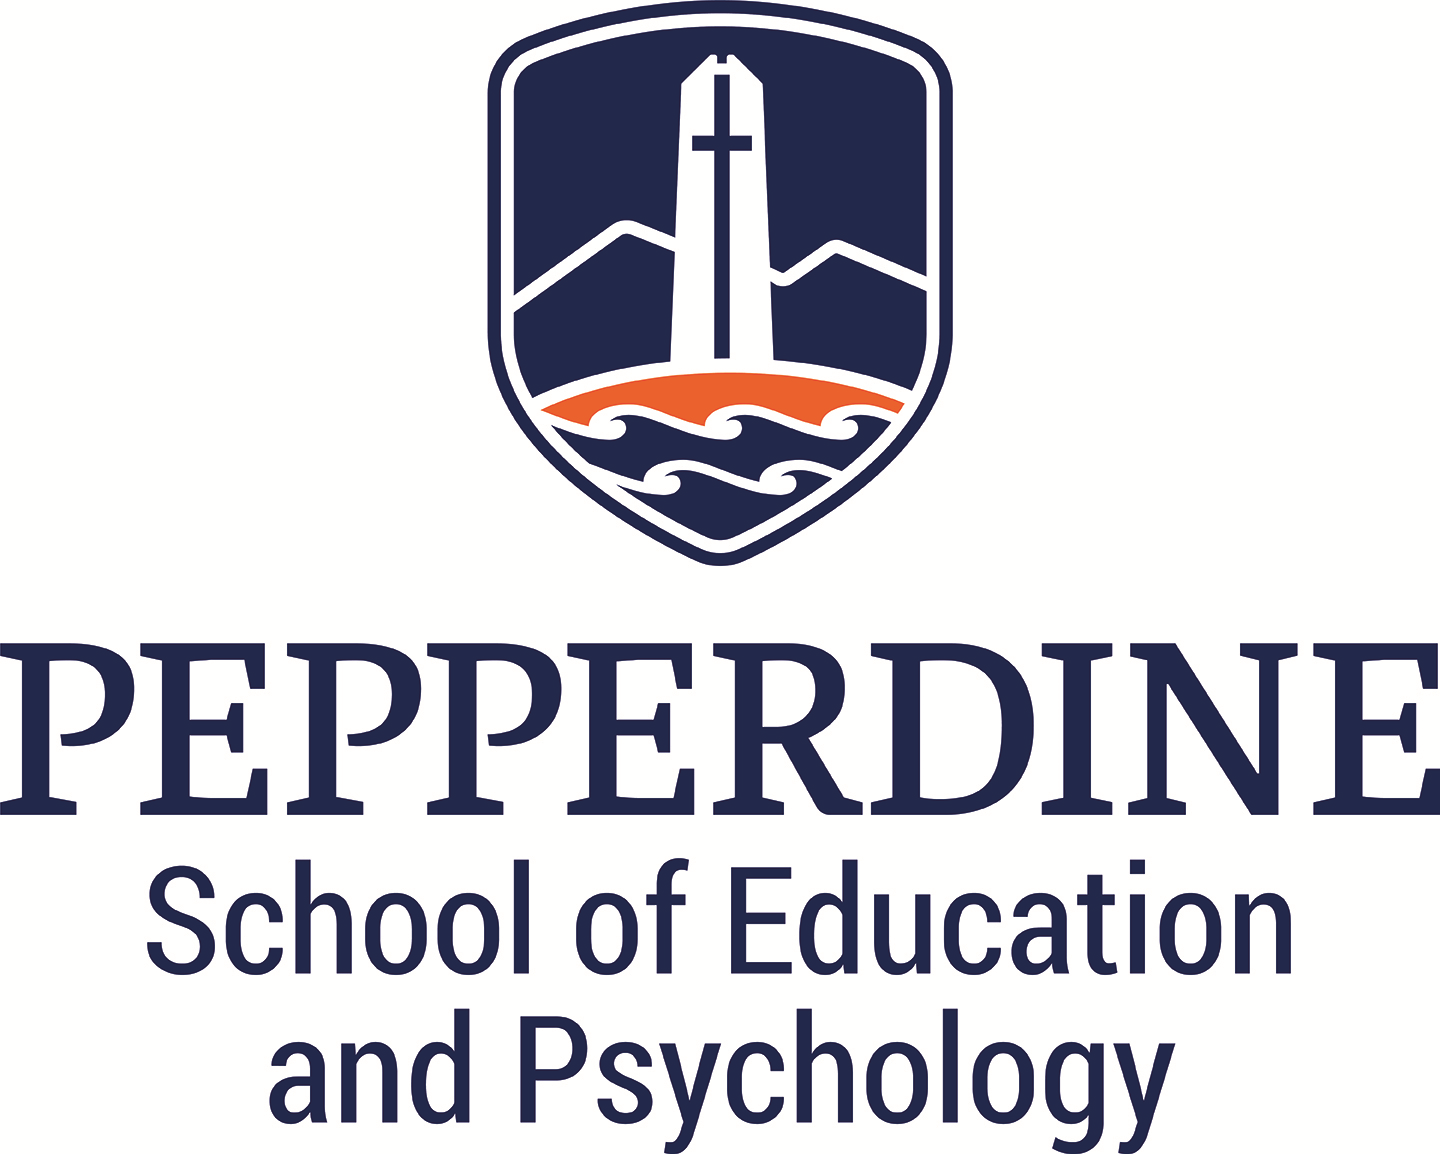 Applied Behavior Analysis (ABA) Program at Pepperdine University